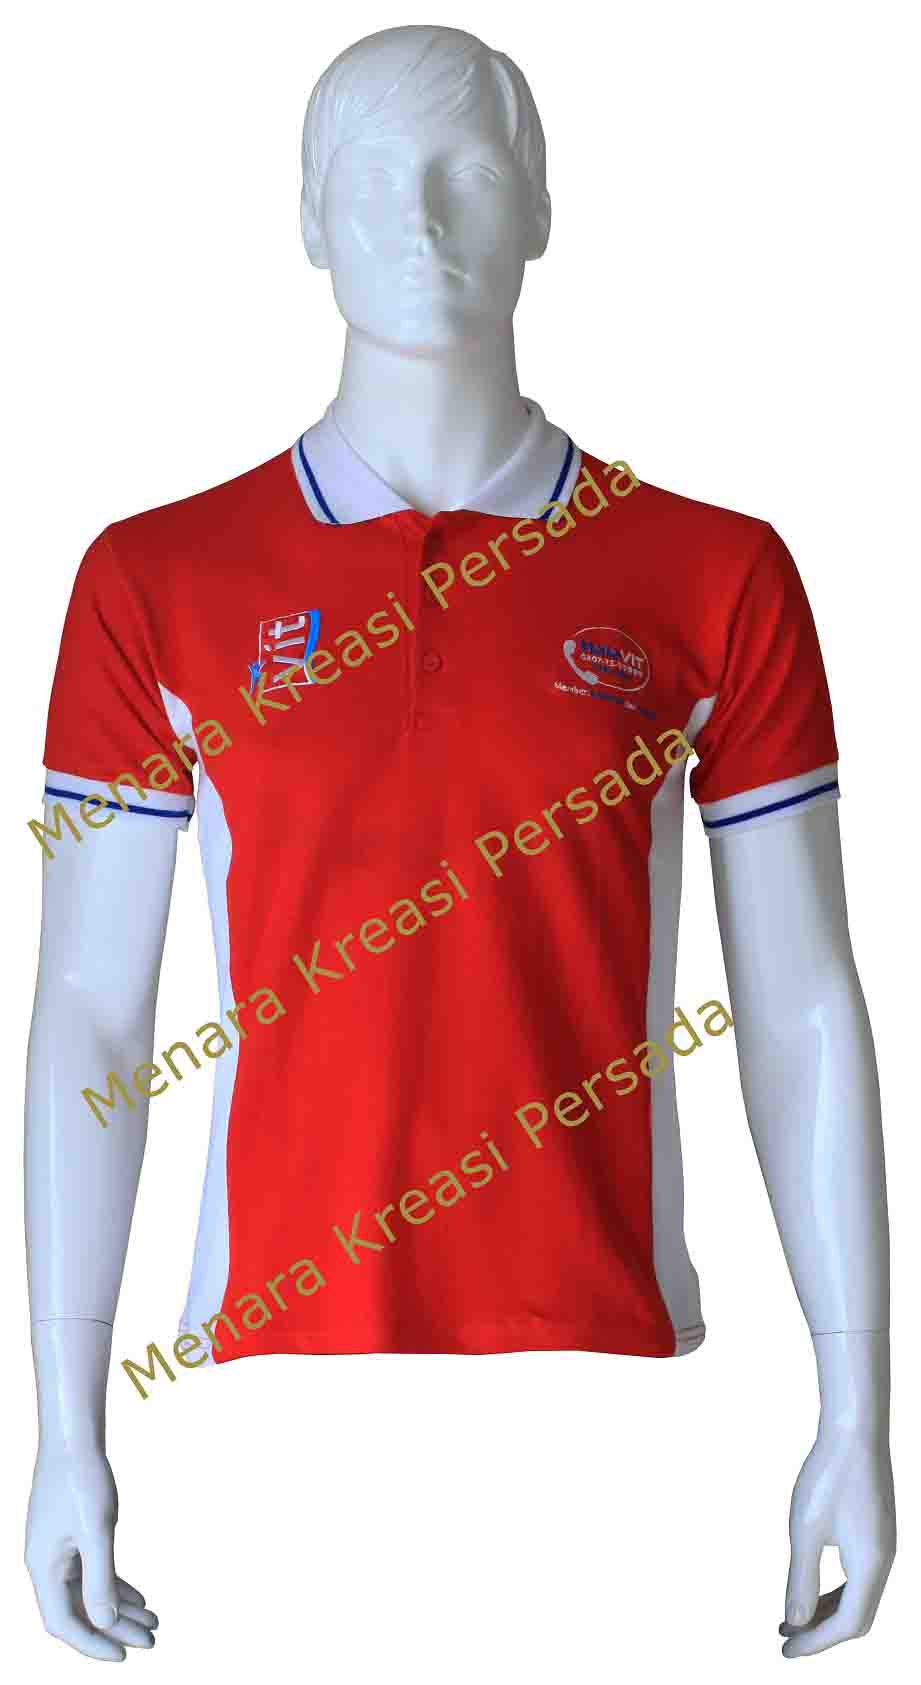 Contoh Kaos Promosi - VIT Merah